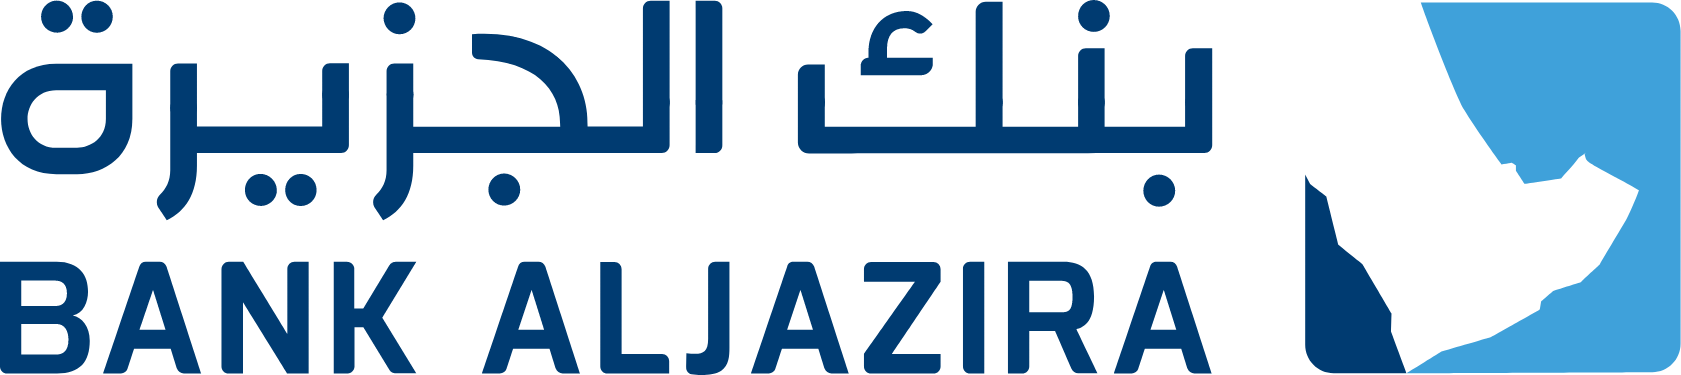 Bank AlJazira logo large (transparent PNG)